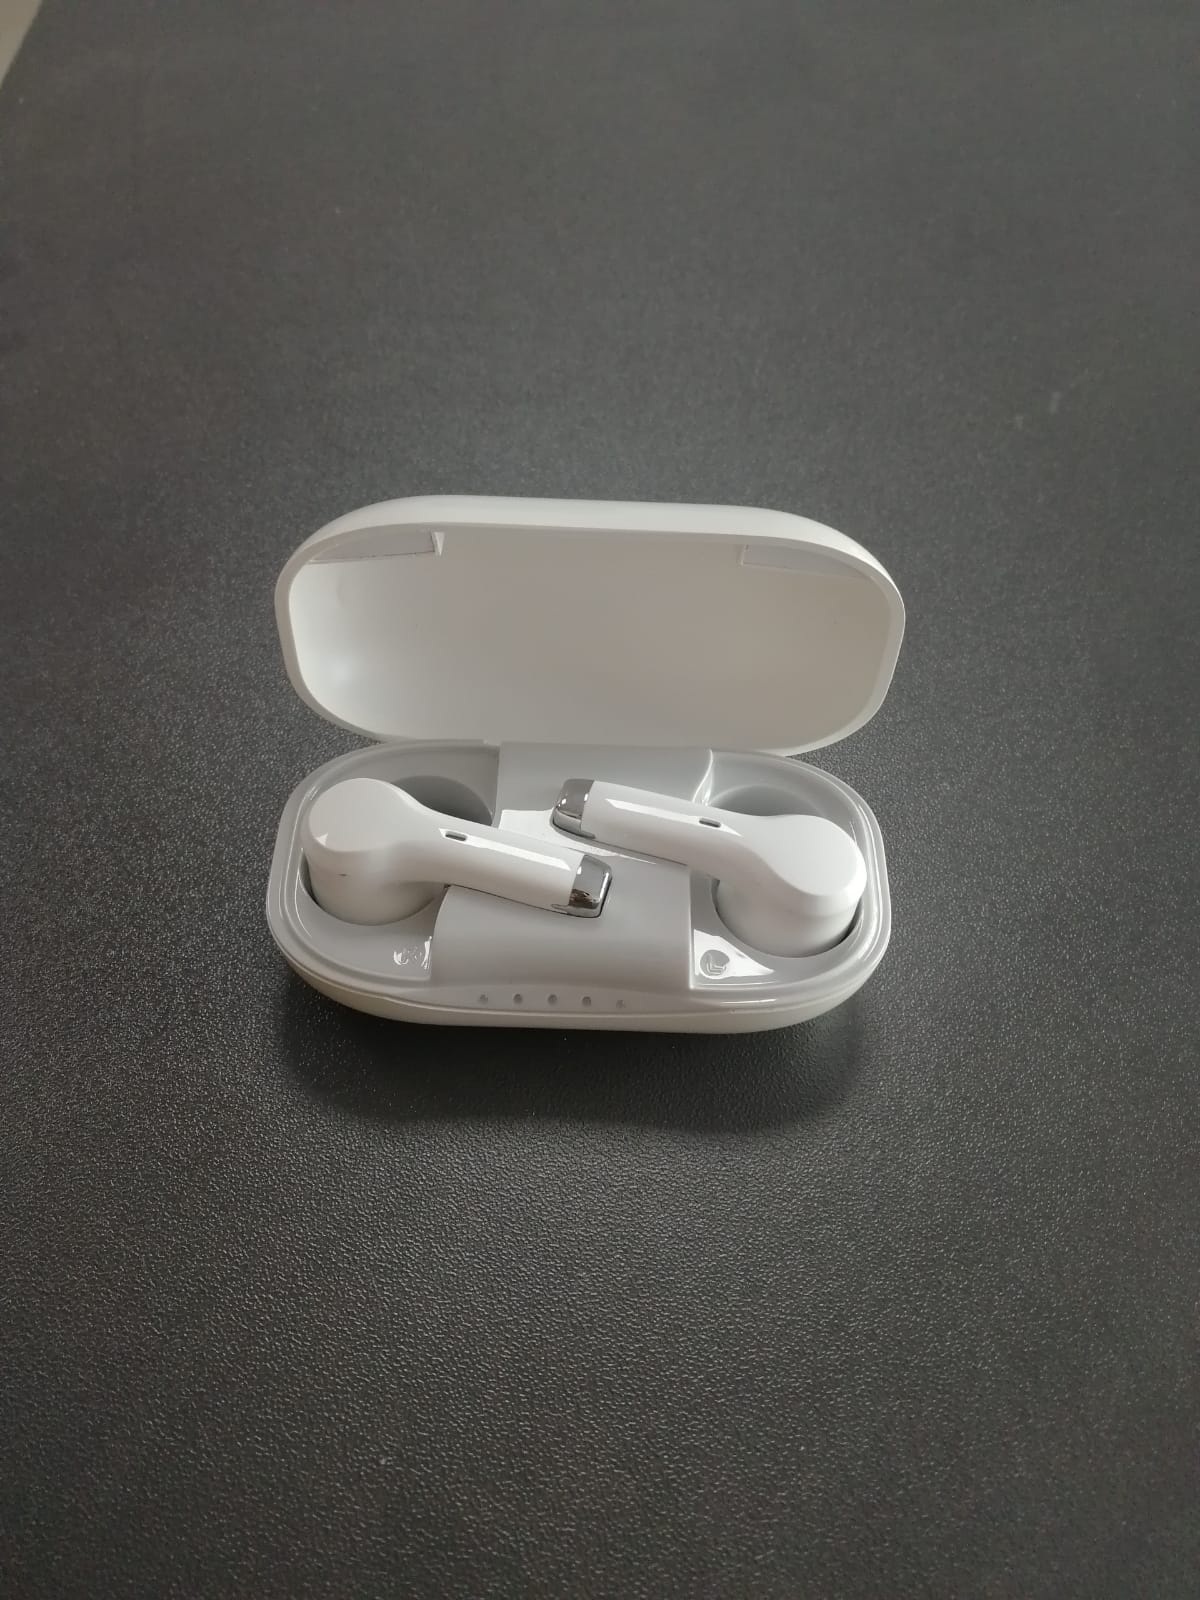 eEAR®-TWS-BT-001 Sluchadla ve stylu Airpod, velmi diskrétní, nevypadají jako typická sluchadla, ale vypadají jako módní Airpods Bluetooth dodávaná všemi hlavními značkami mobilních telefonů